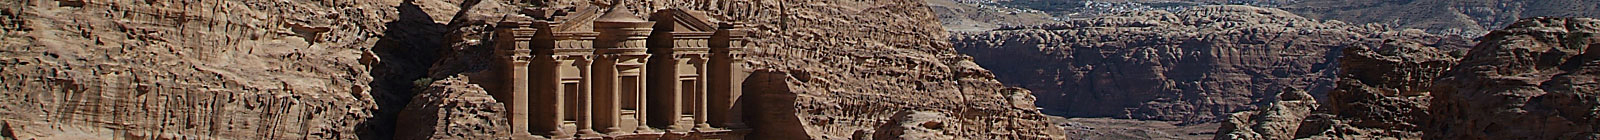 Jordan, Al-Ayr, Monastery Petra.